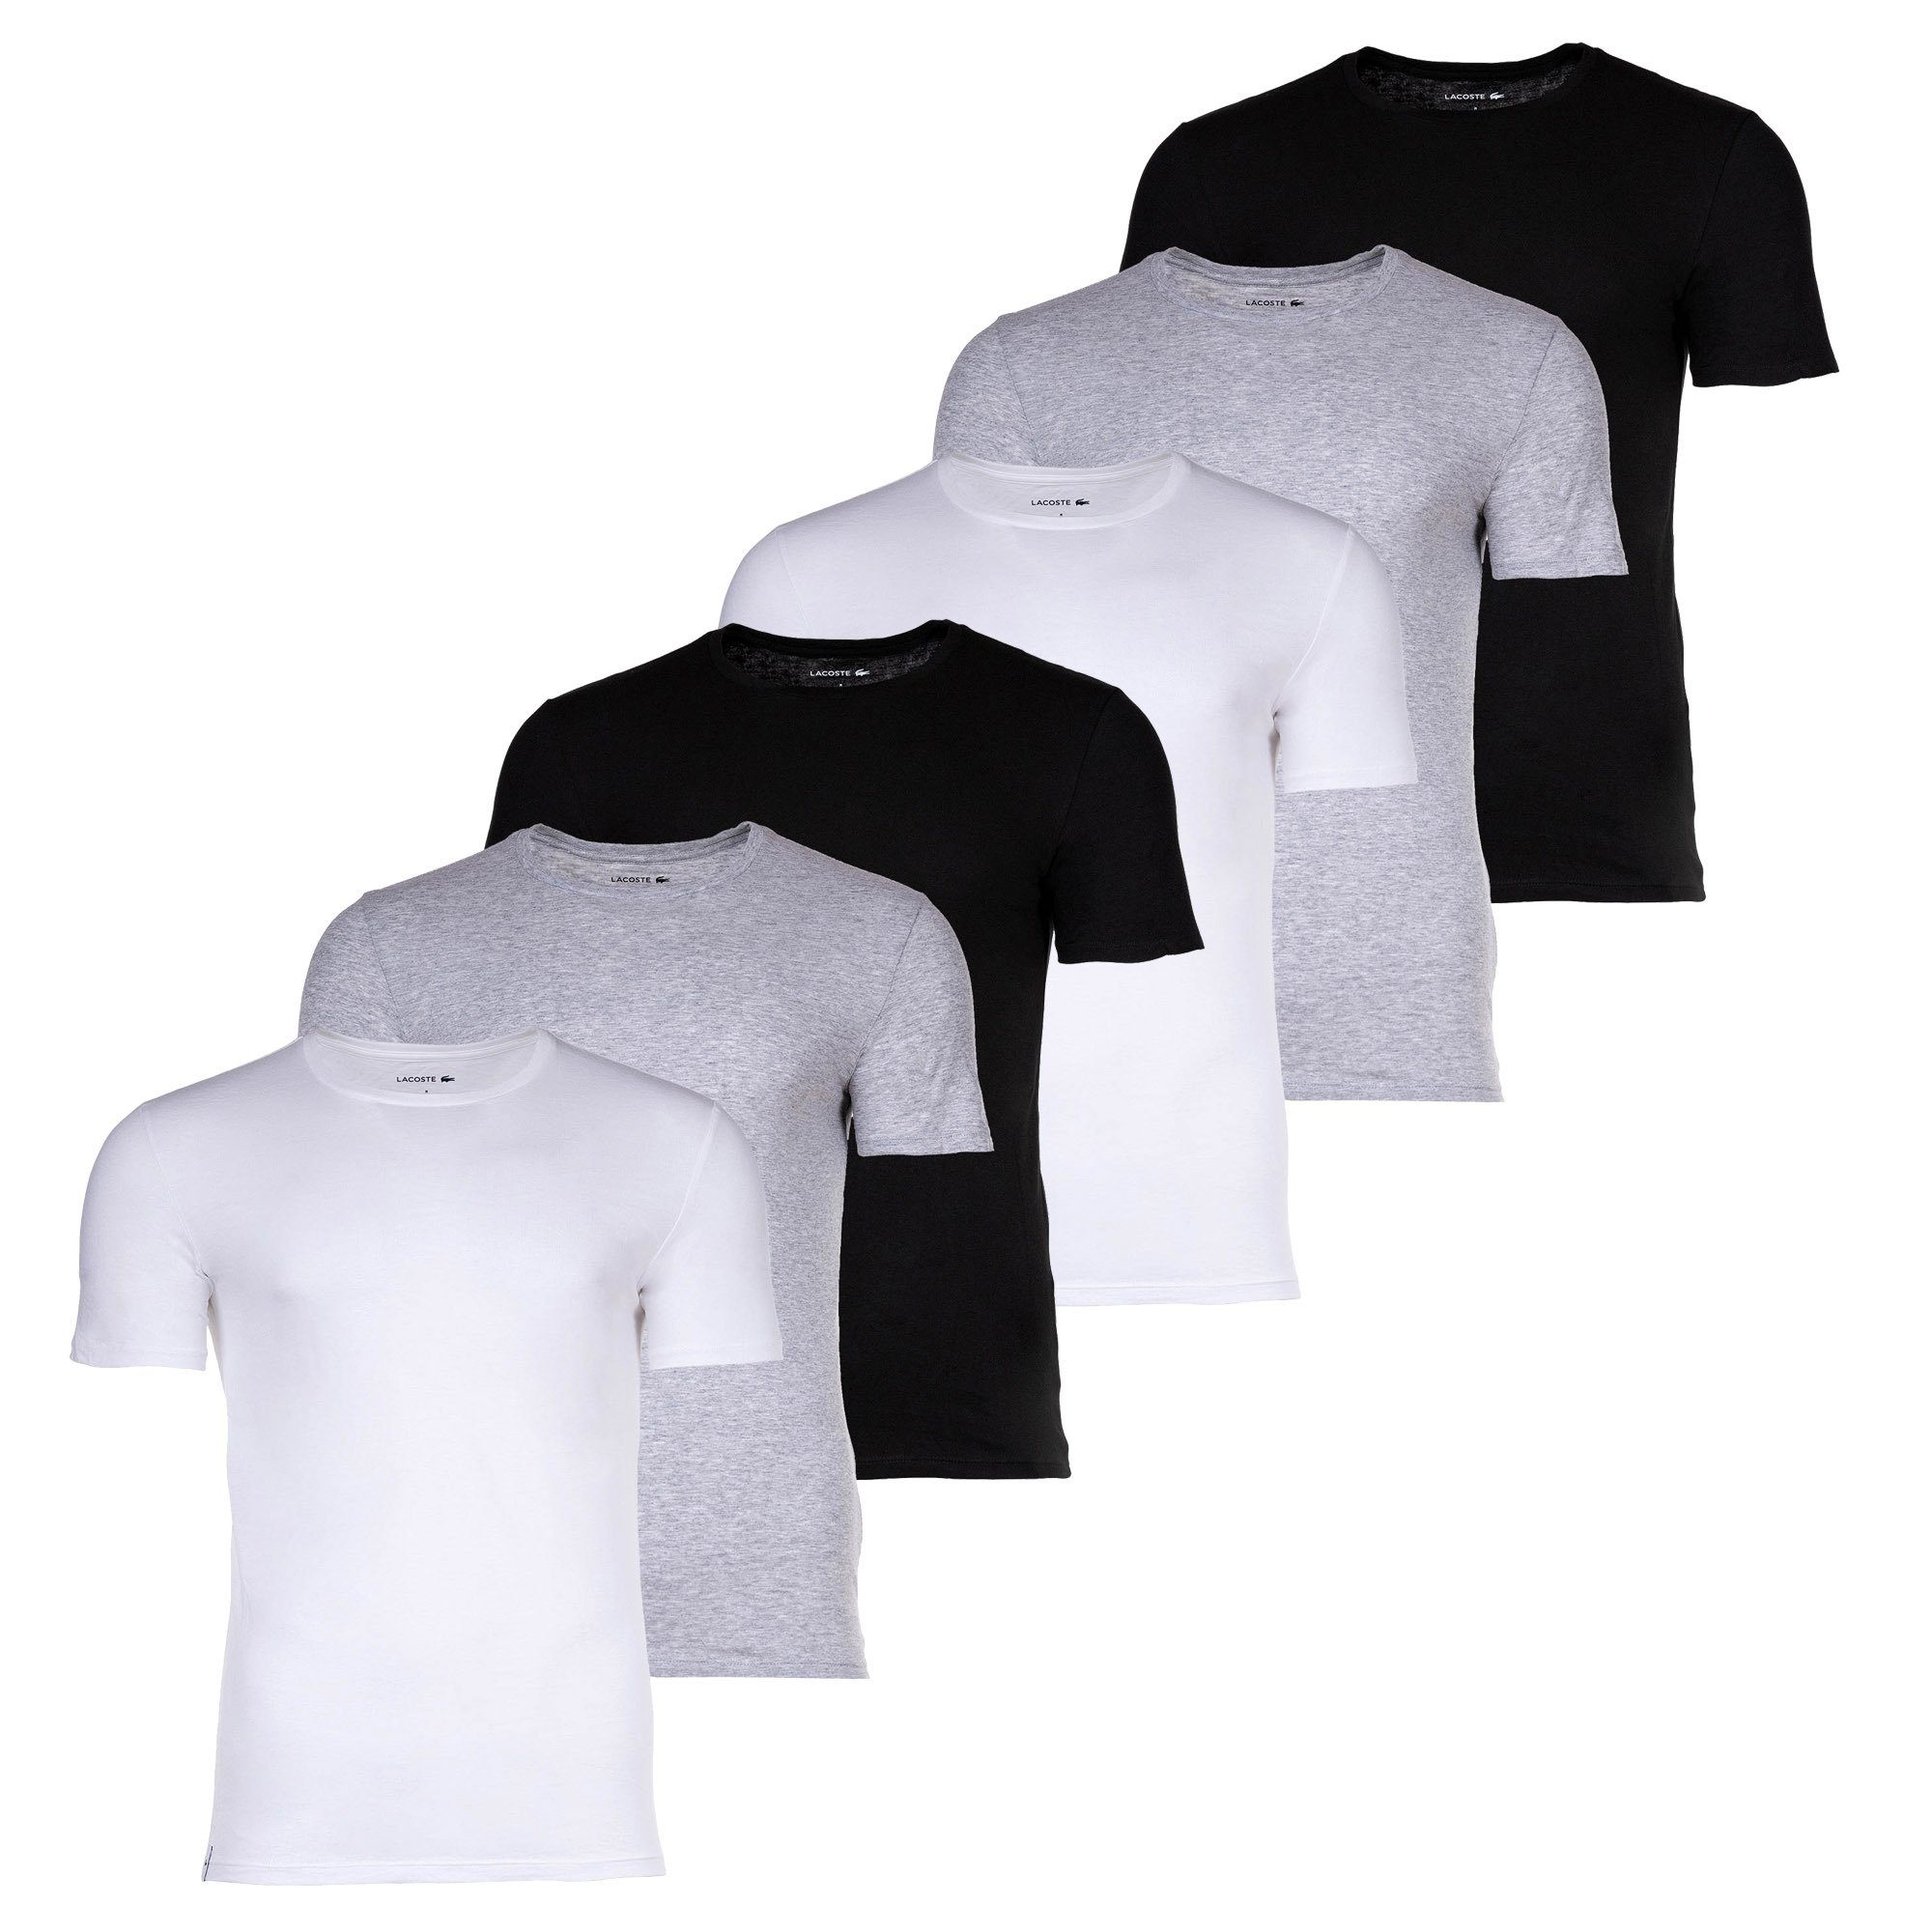 6er - T-Shirt Lacoste Rundhals Essentials, Herren T-Shirts, Weiß/Grau/Schwarz Pack